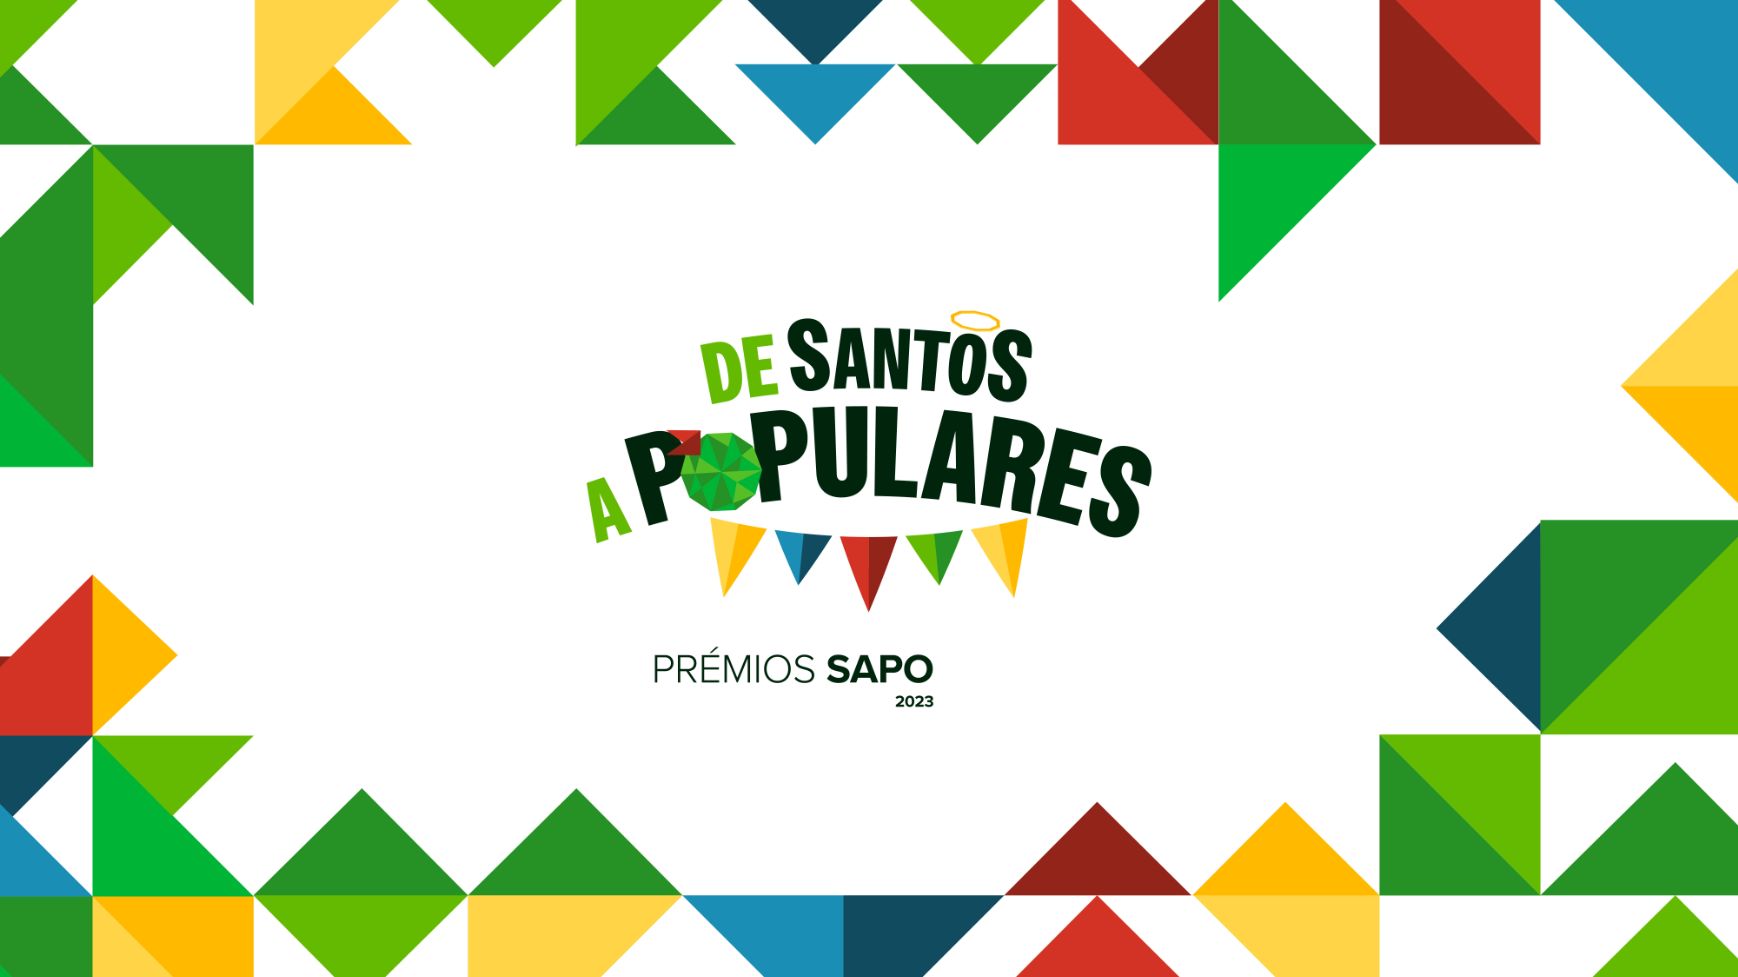 Os Prémios SAPO estão de volta para uma edição inédita nos Santos Populares